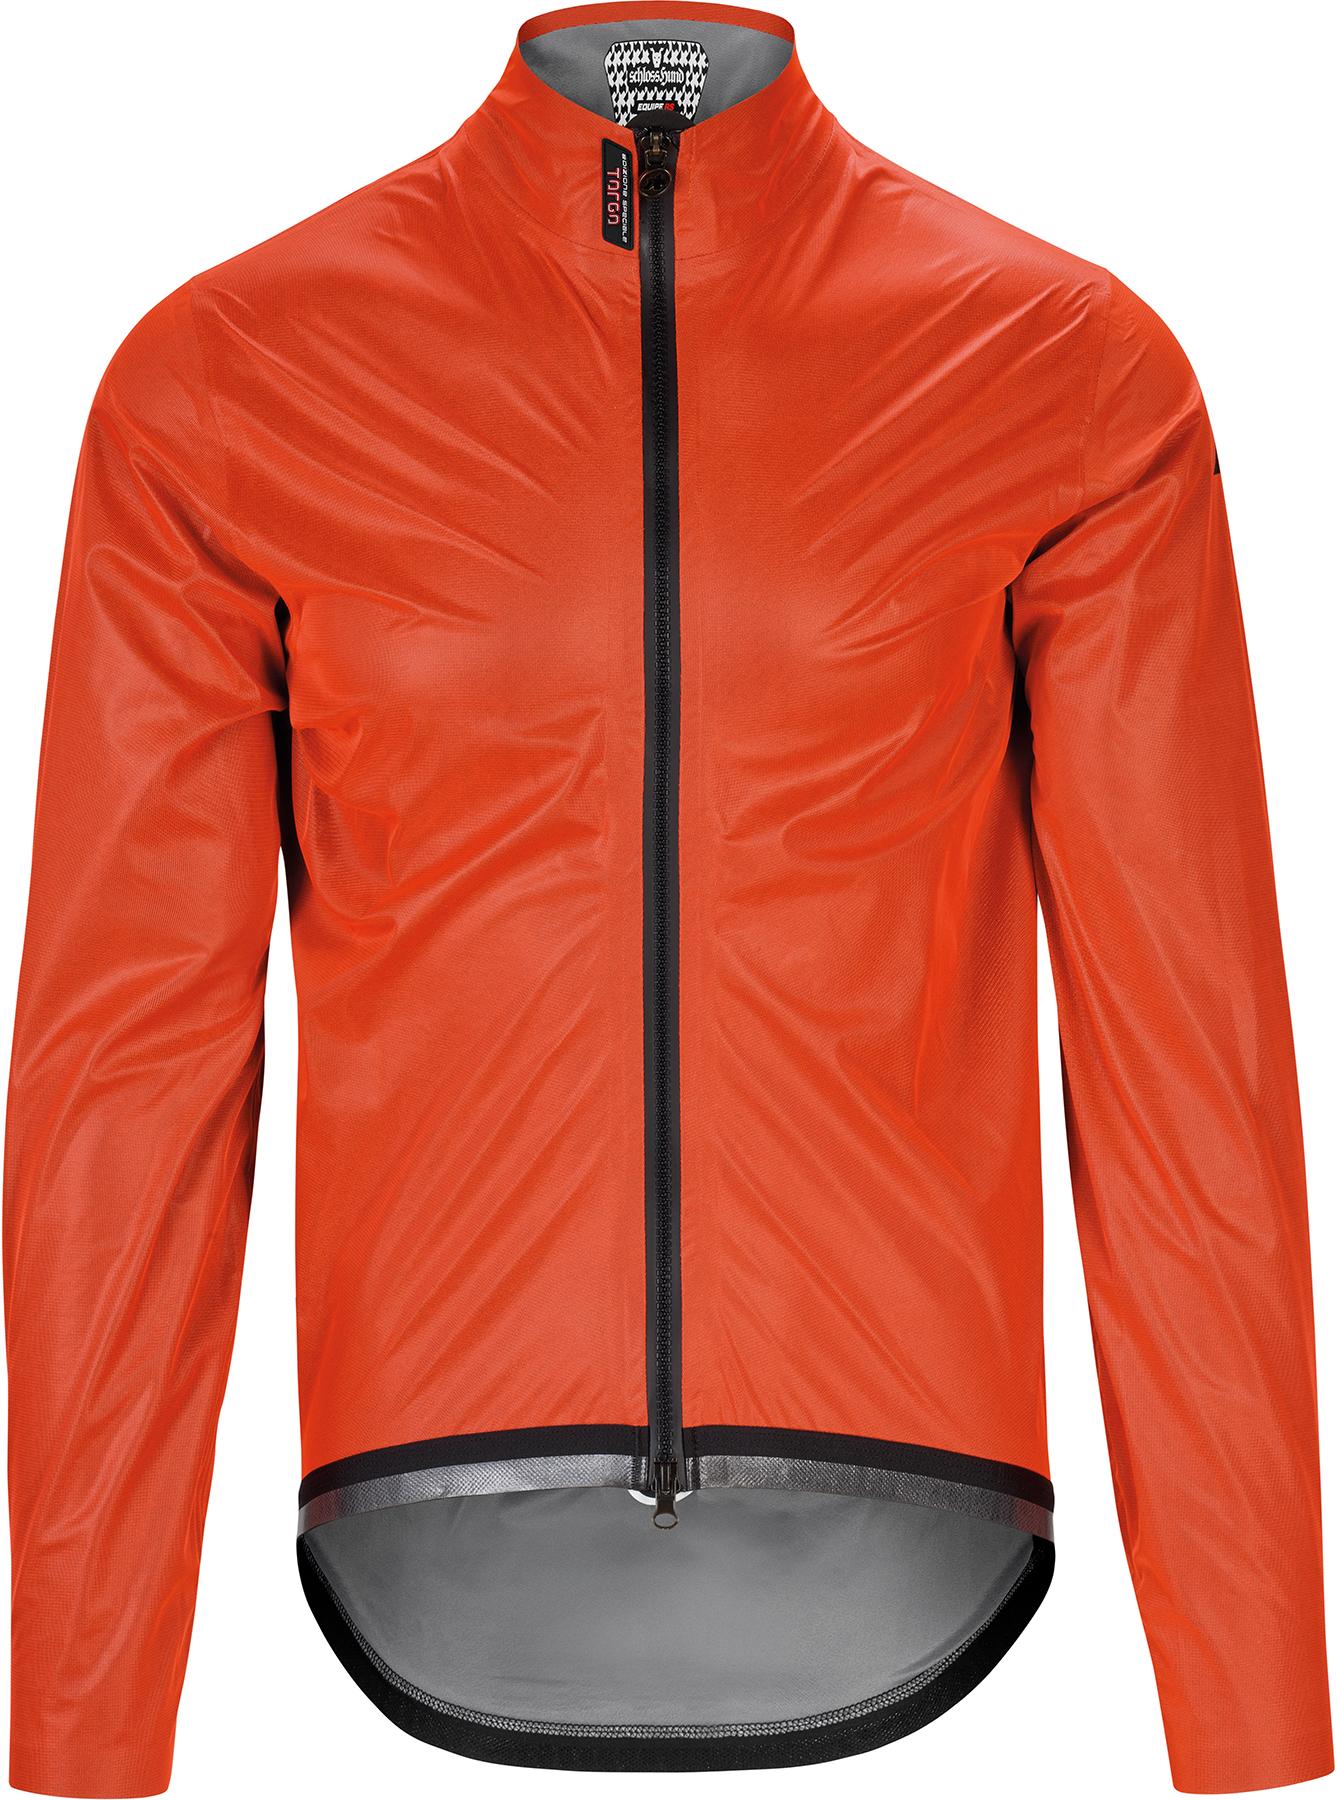 Assos Equipe Rs Targa Cycling Rain Jacket  Propeller Orange